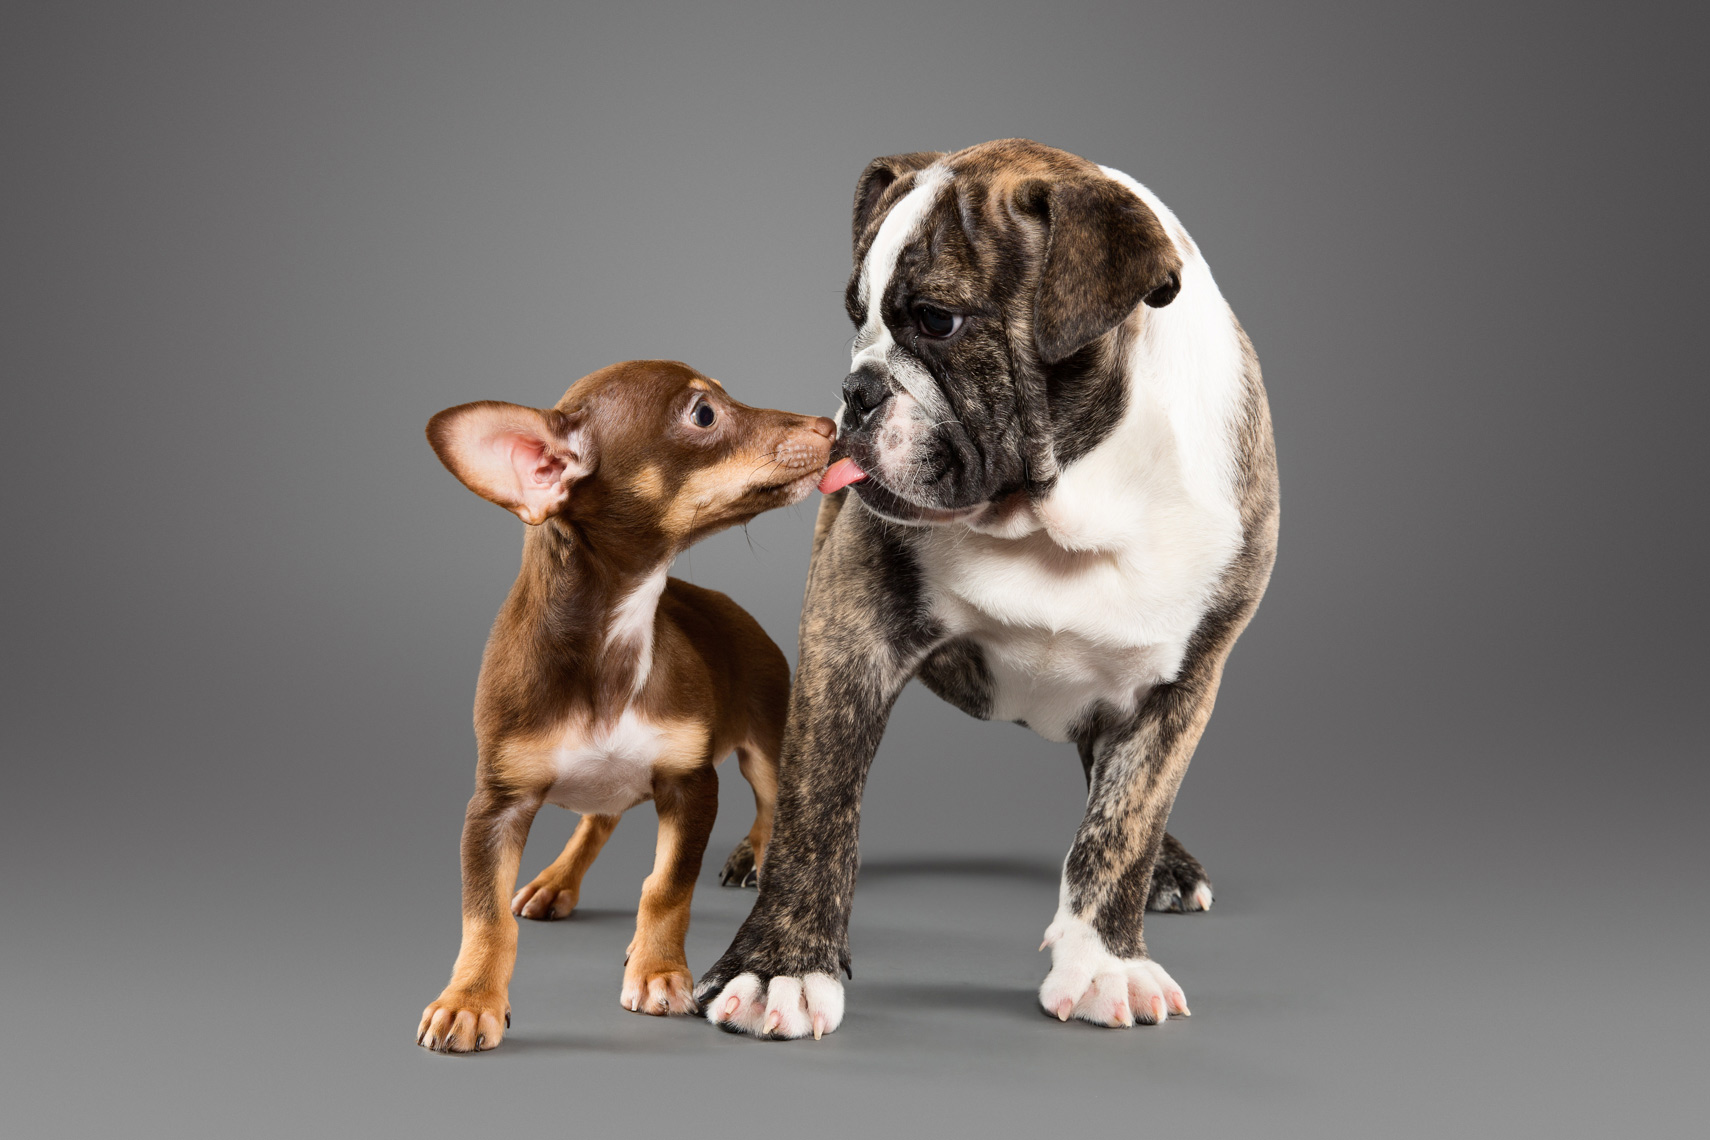 Chihuahua puppy licking a bulldog